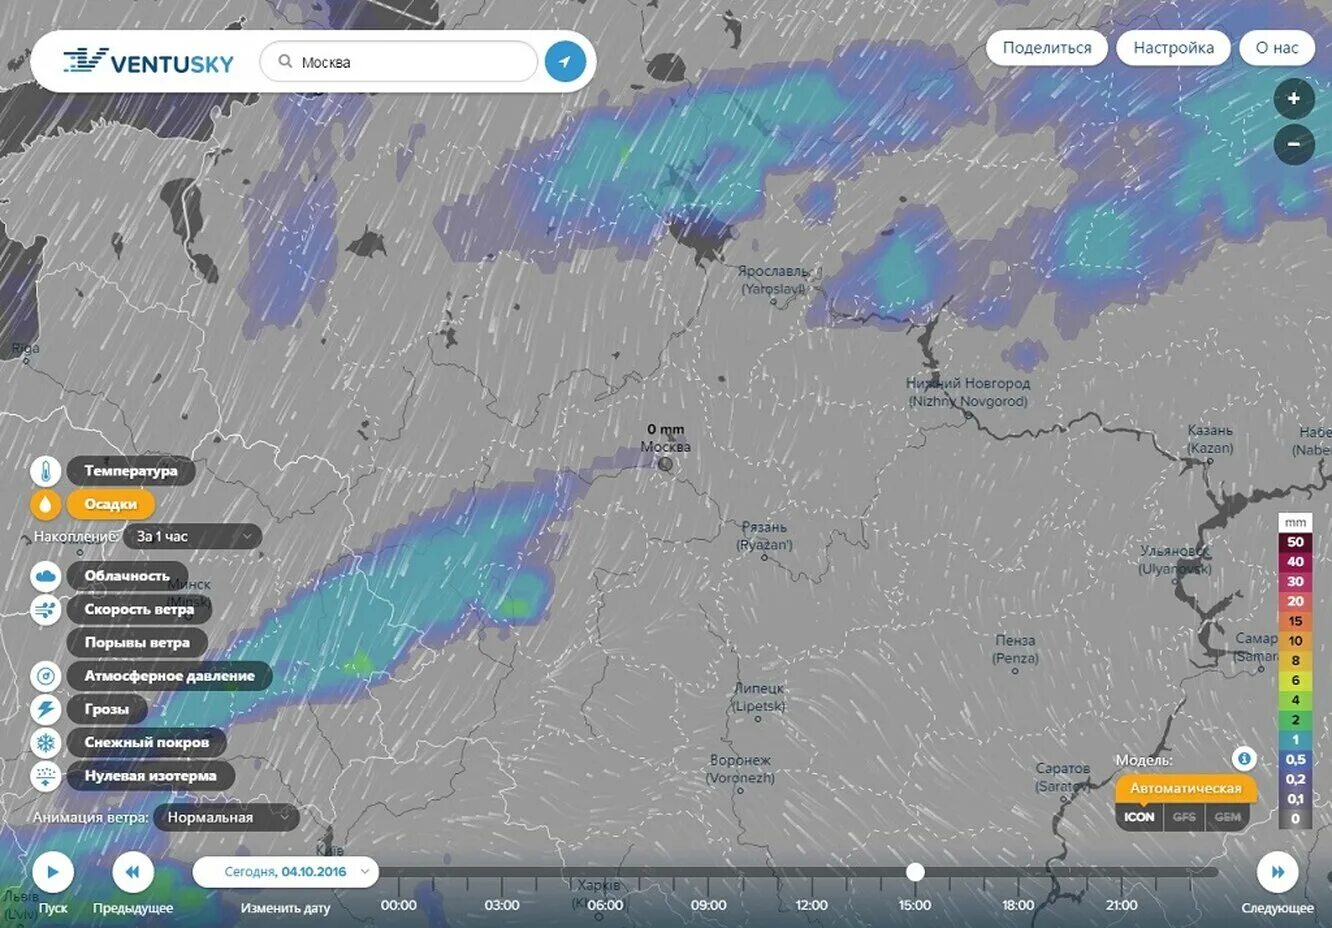 Карта погоды в курской области. Карта погоды. Облачность на карте в реальном времени. Карта погодных условий в реальном времени. Карта туч в реальном времени.